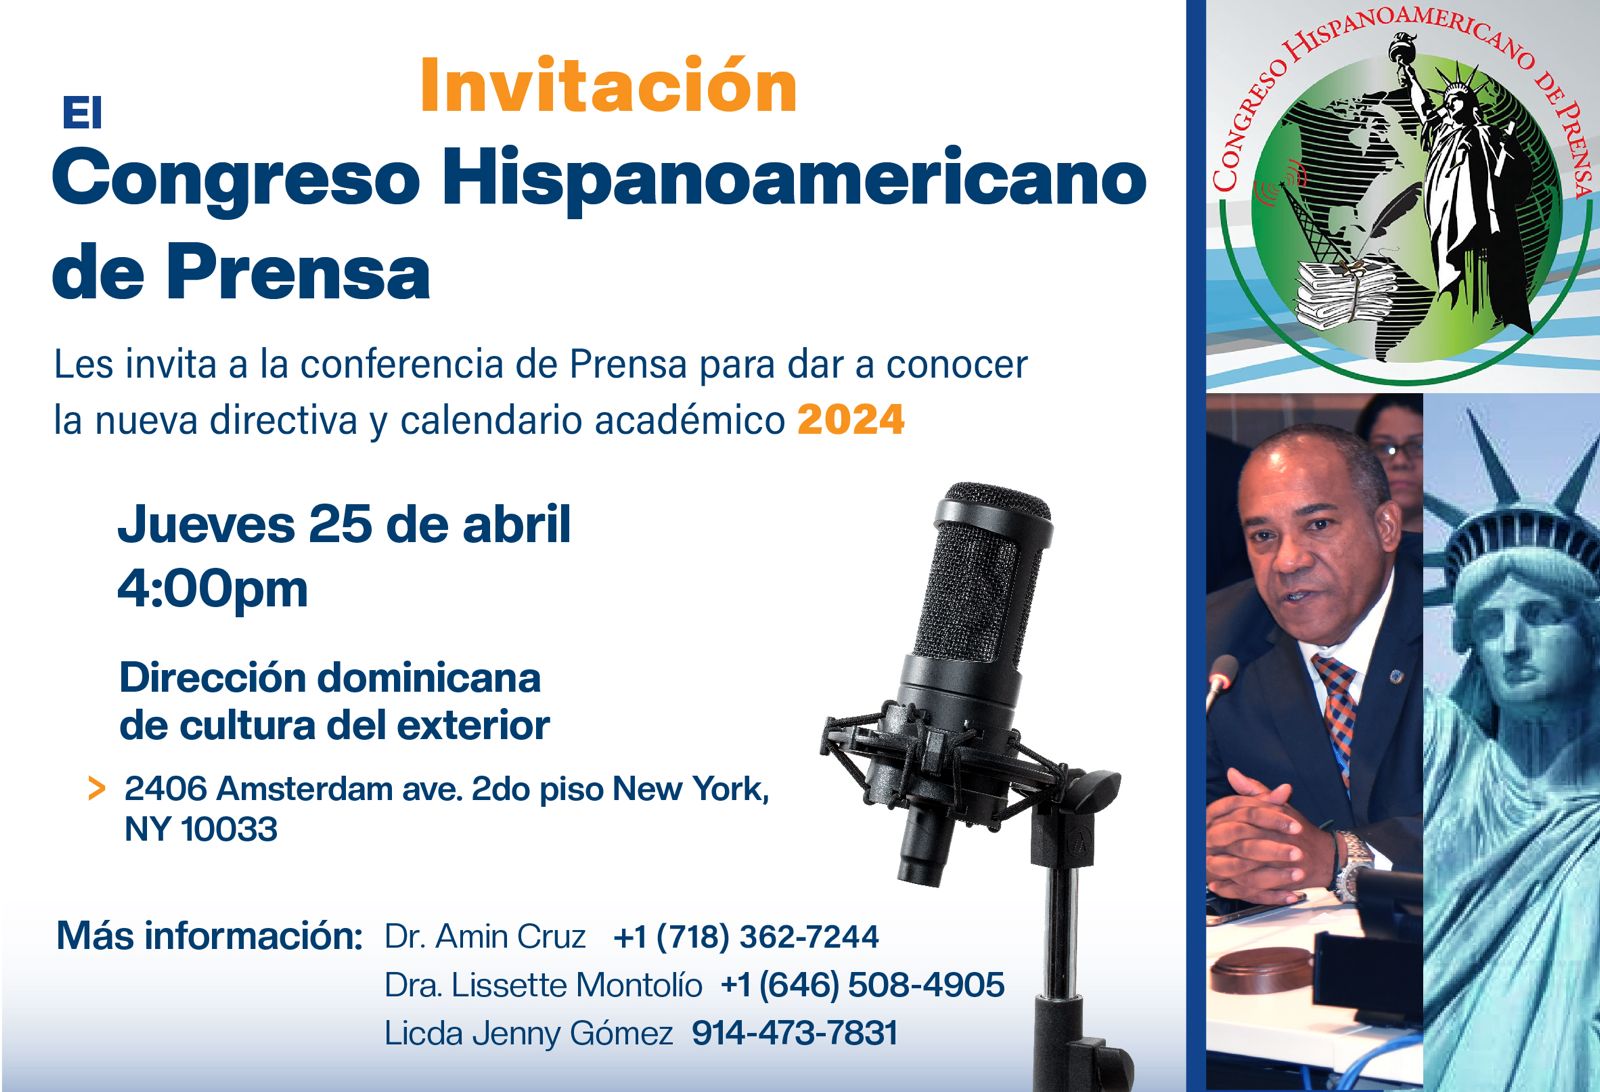 Avance y preparativos del 26° Aniversario del Congreso Hispanoamericano de Prensa  Portada 1 Flayer